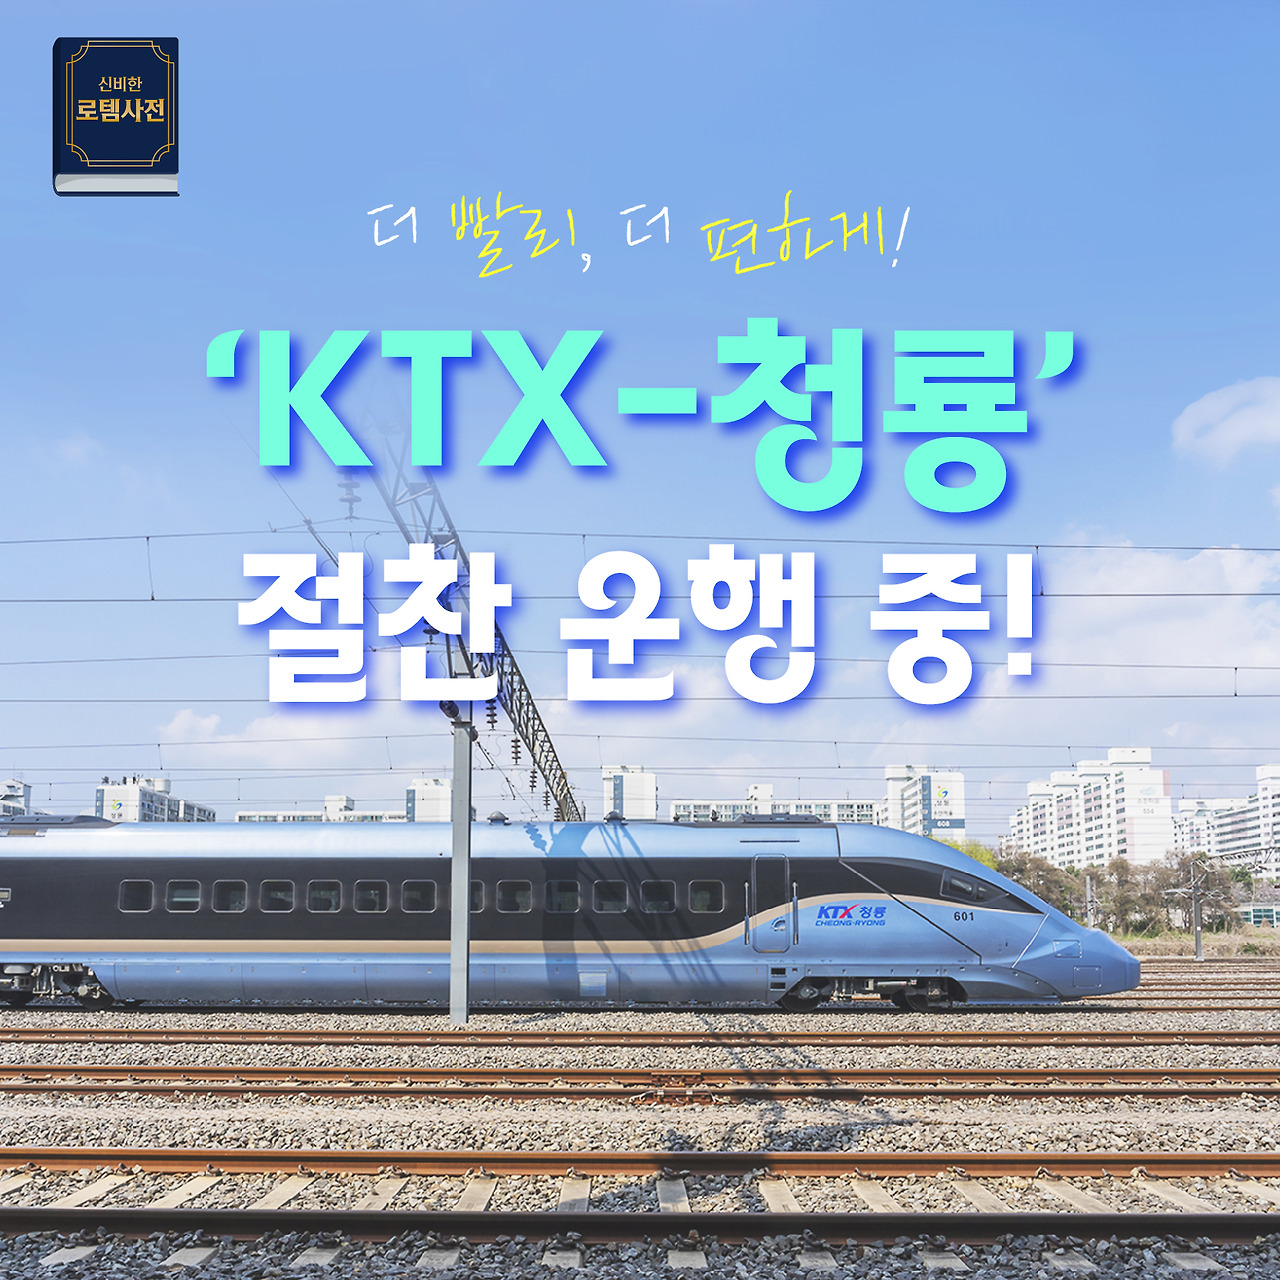 [神秘的樂鐵字典] 新列車「KTX-青龍」來了!大獲好評上路